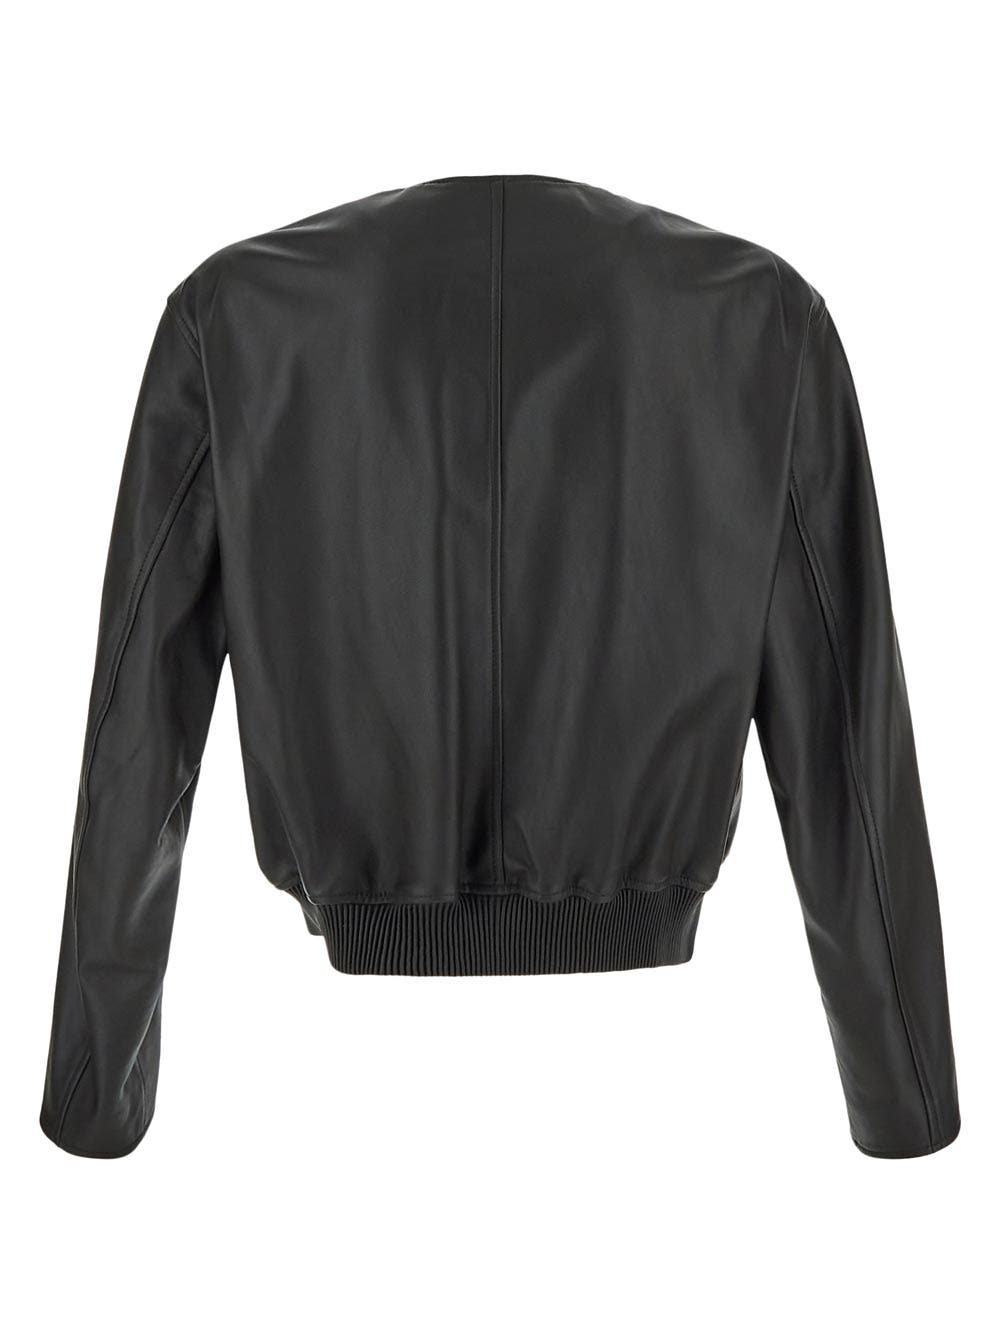 Leather Jacket - 2